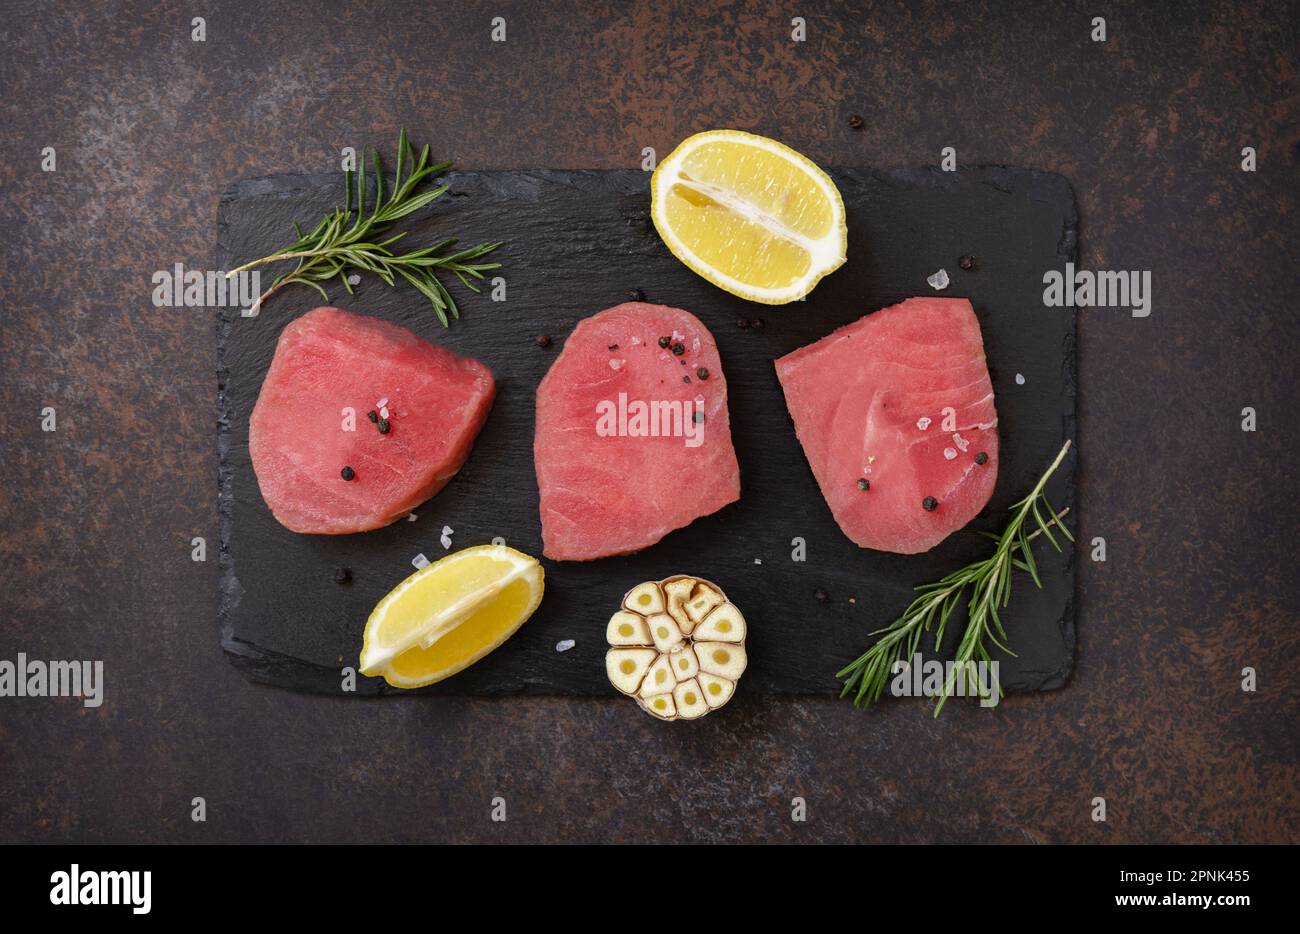 Fruits de mer. Steaks de thon juteux cru aux épices et au romarin sur une table en pierre. Vue de dessus. Banque D'Images